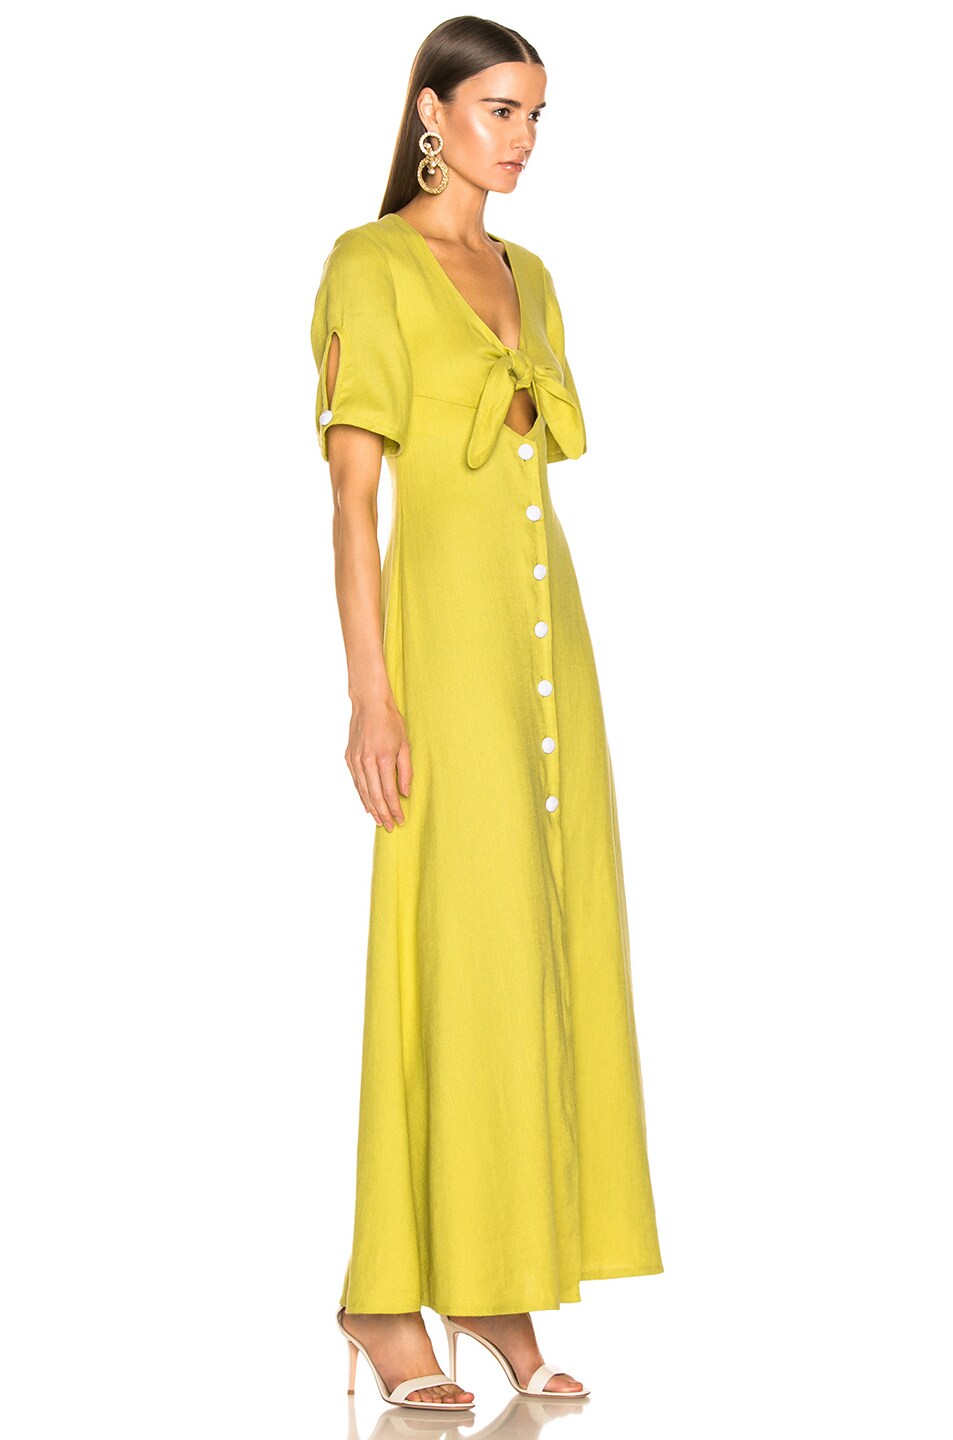 Alexis Jameela Dress in Lemongrass Linen | FWRD